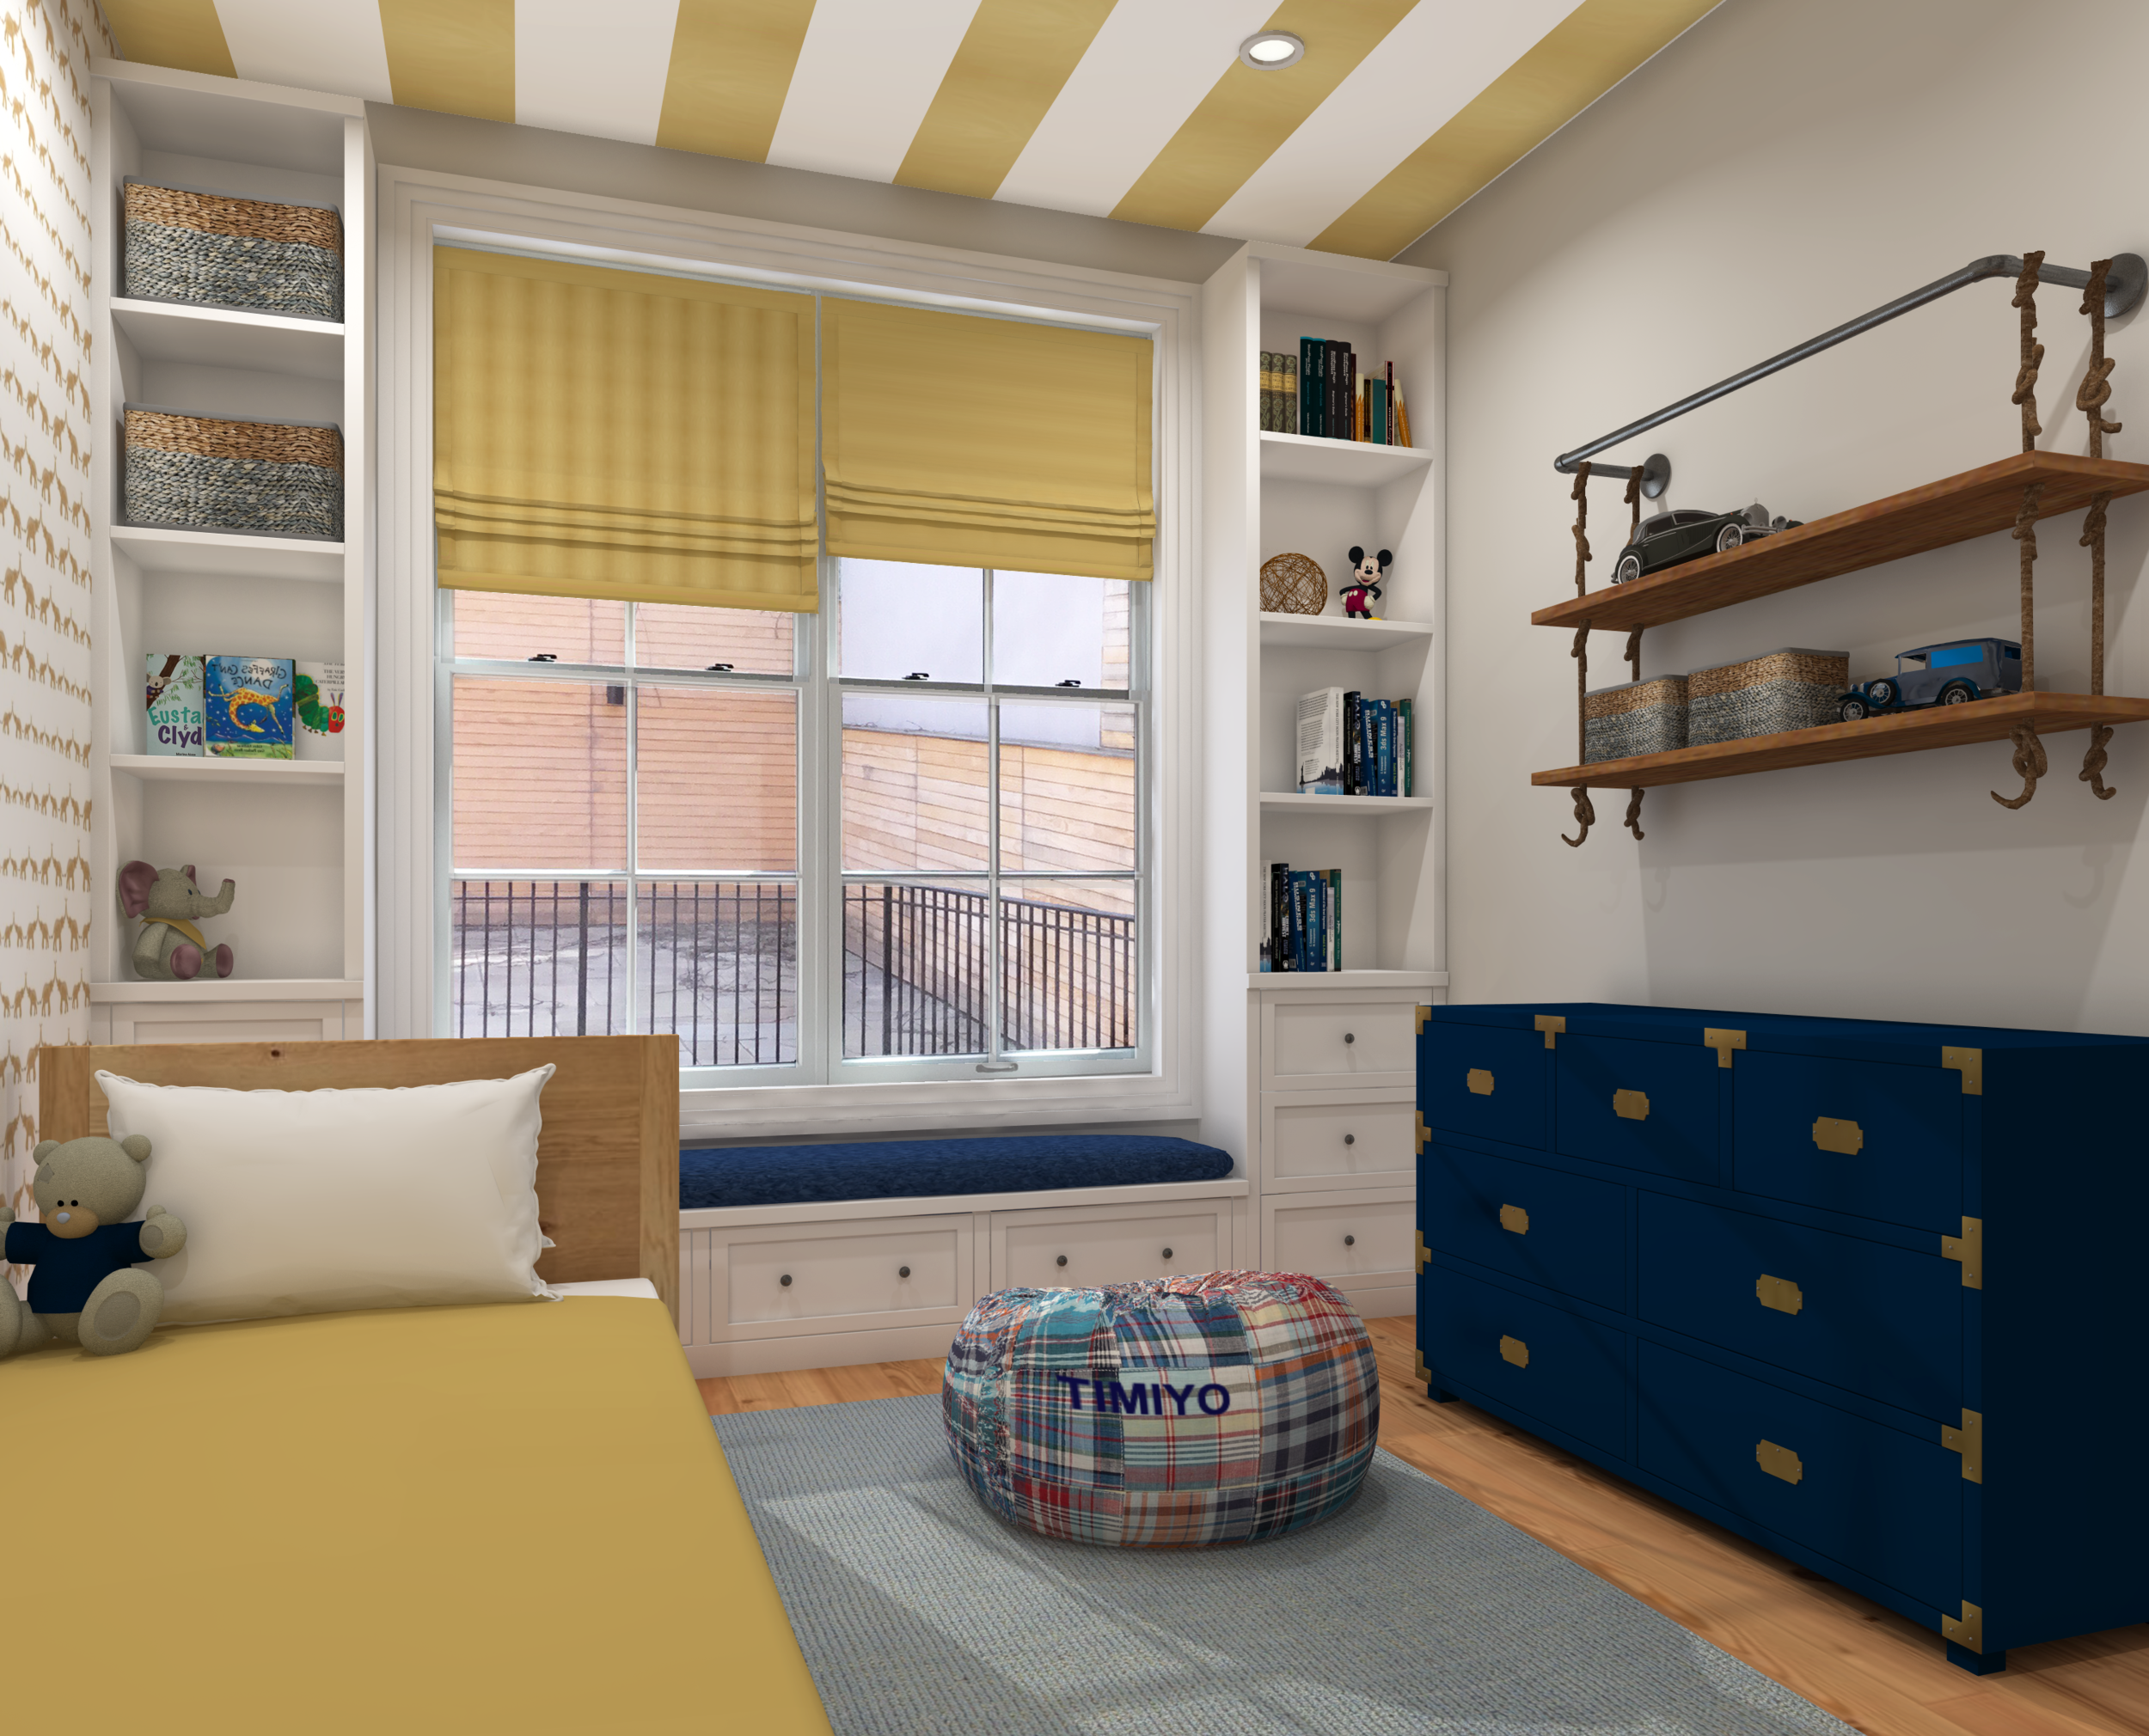 kids bedroom design